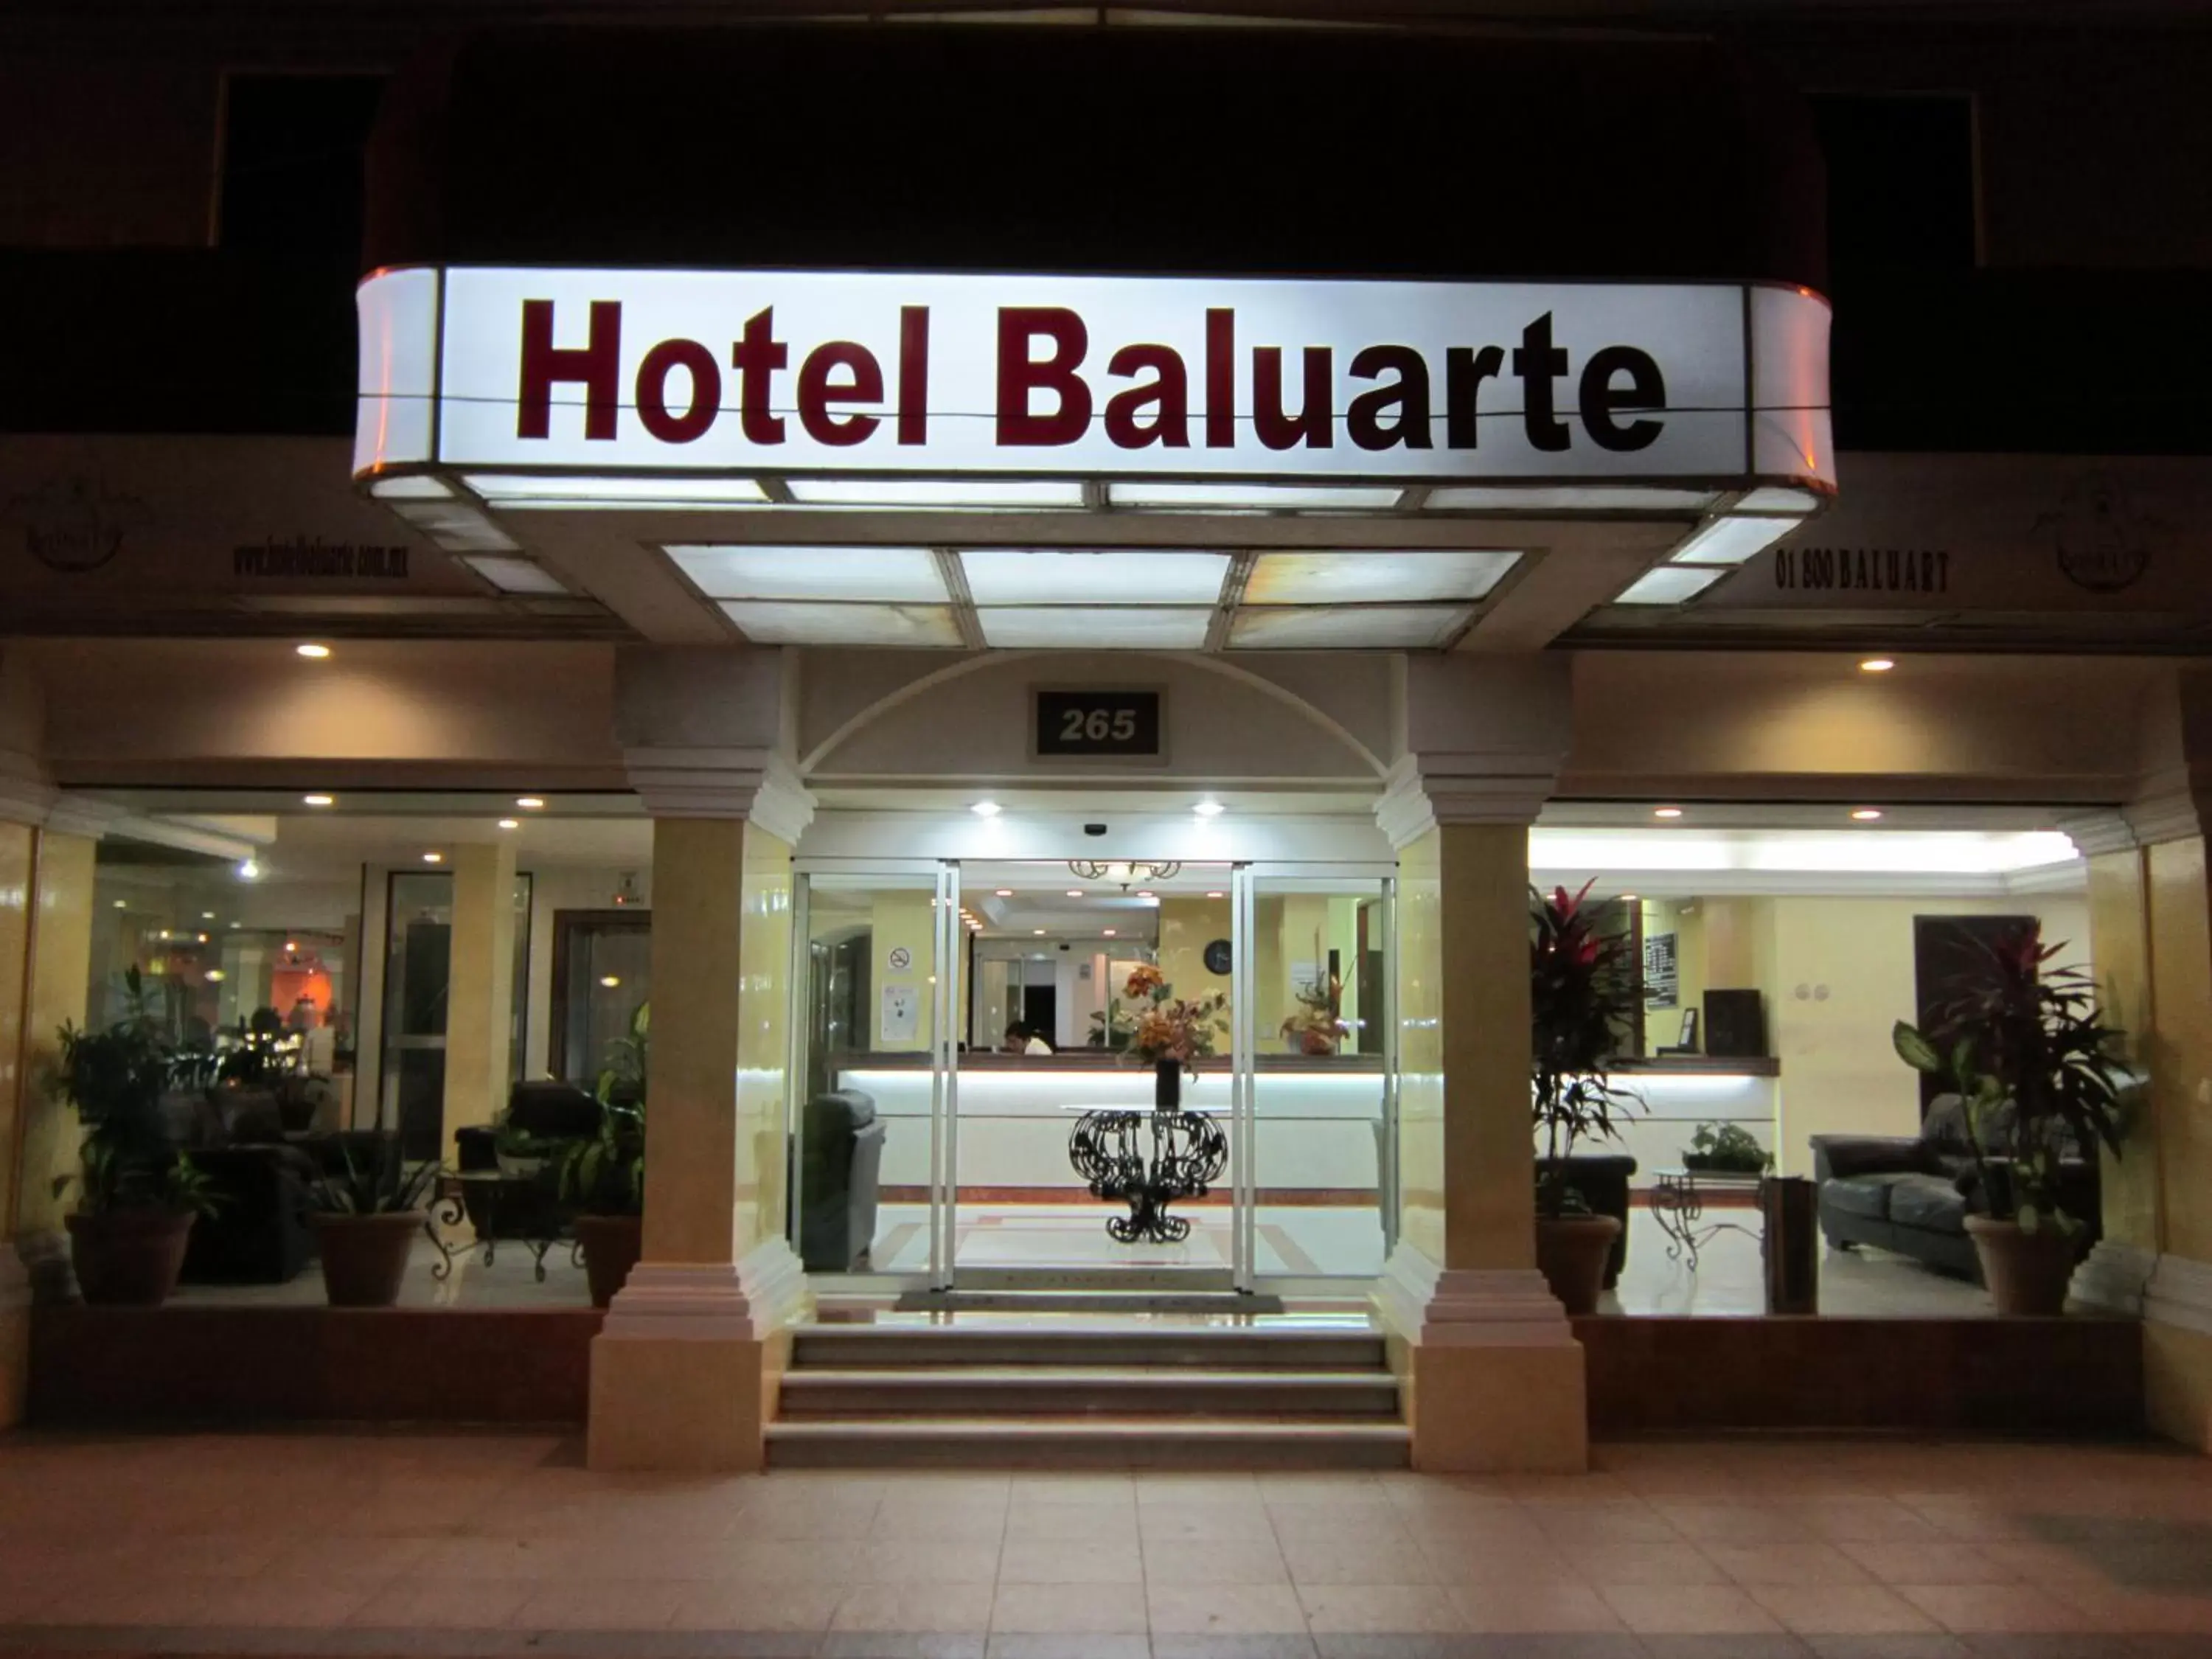 Facade/entrance in Hotel Baluarte